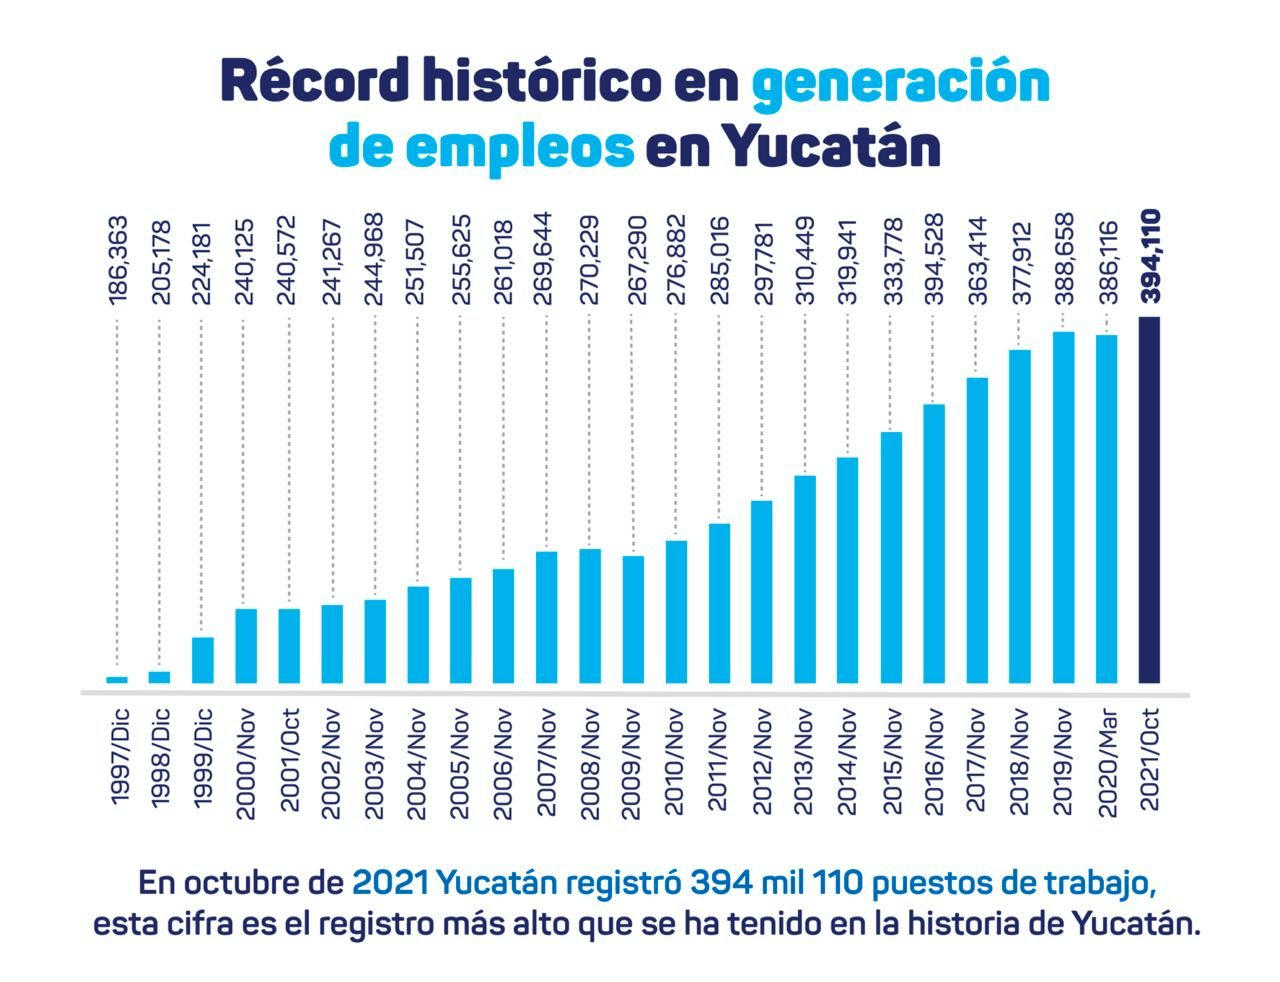 Récord histórico de generación de empleos en Yucatán